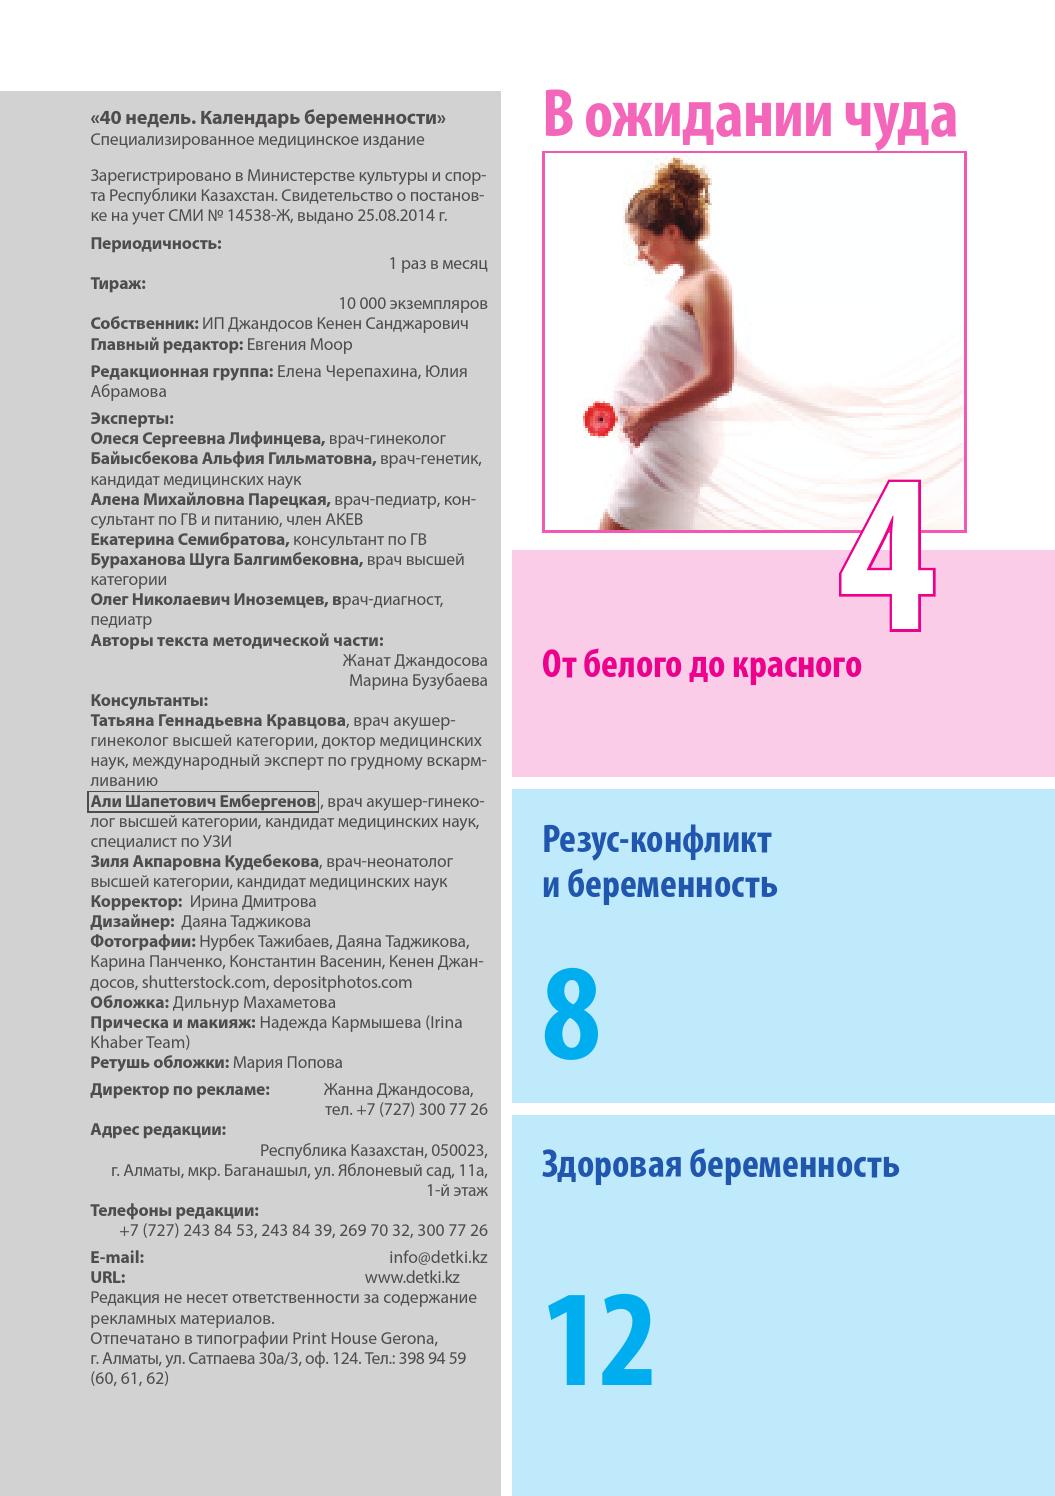 Справка о беременности с печатью фото из женской консультации